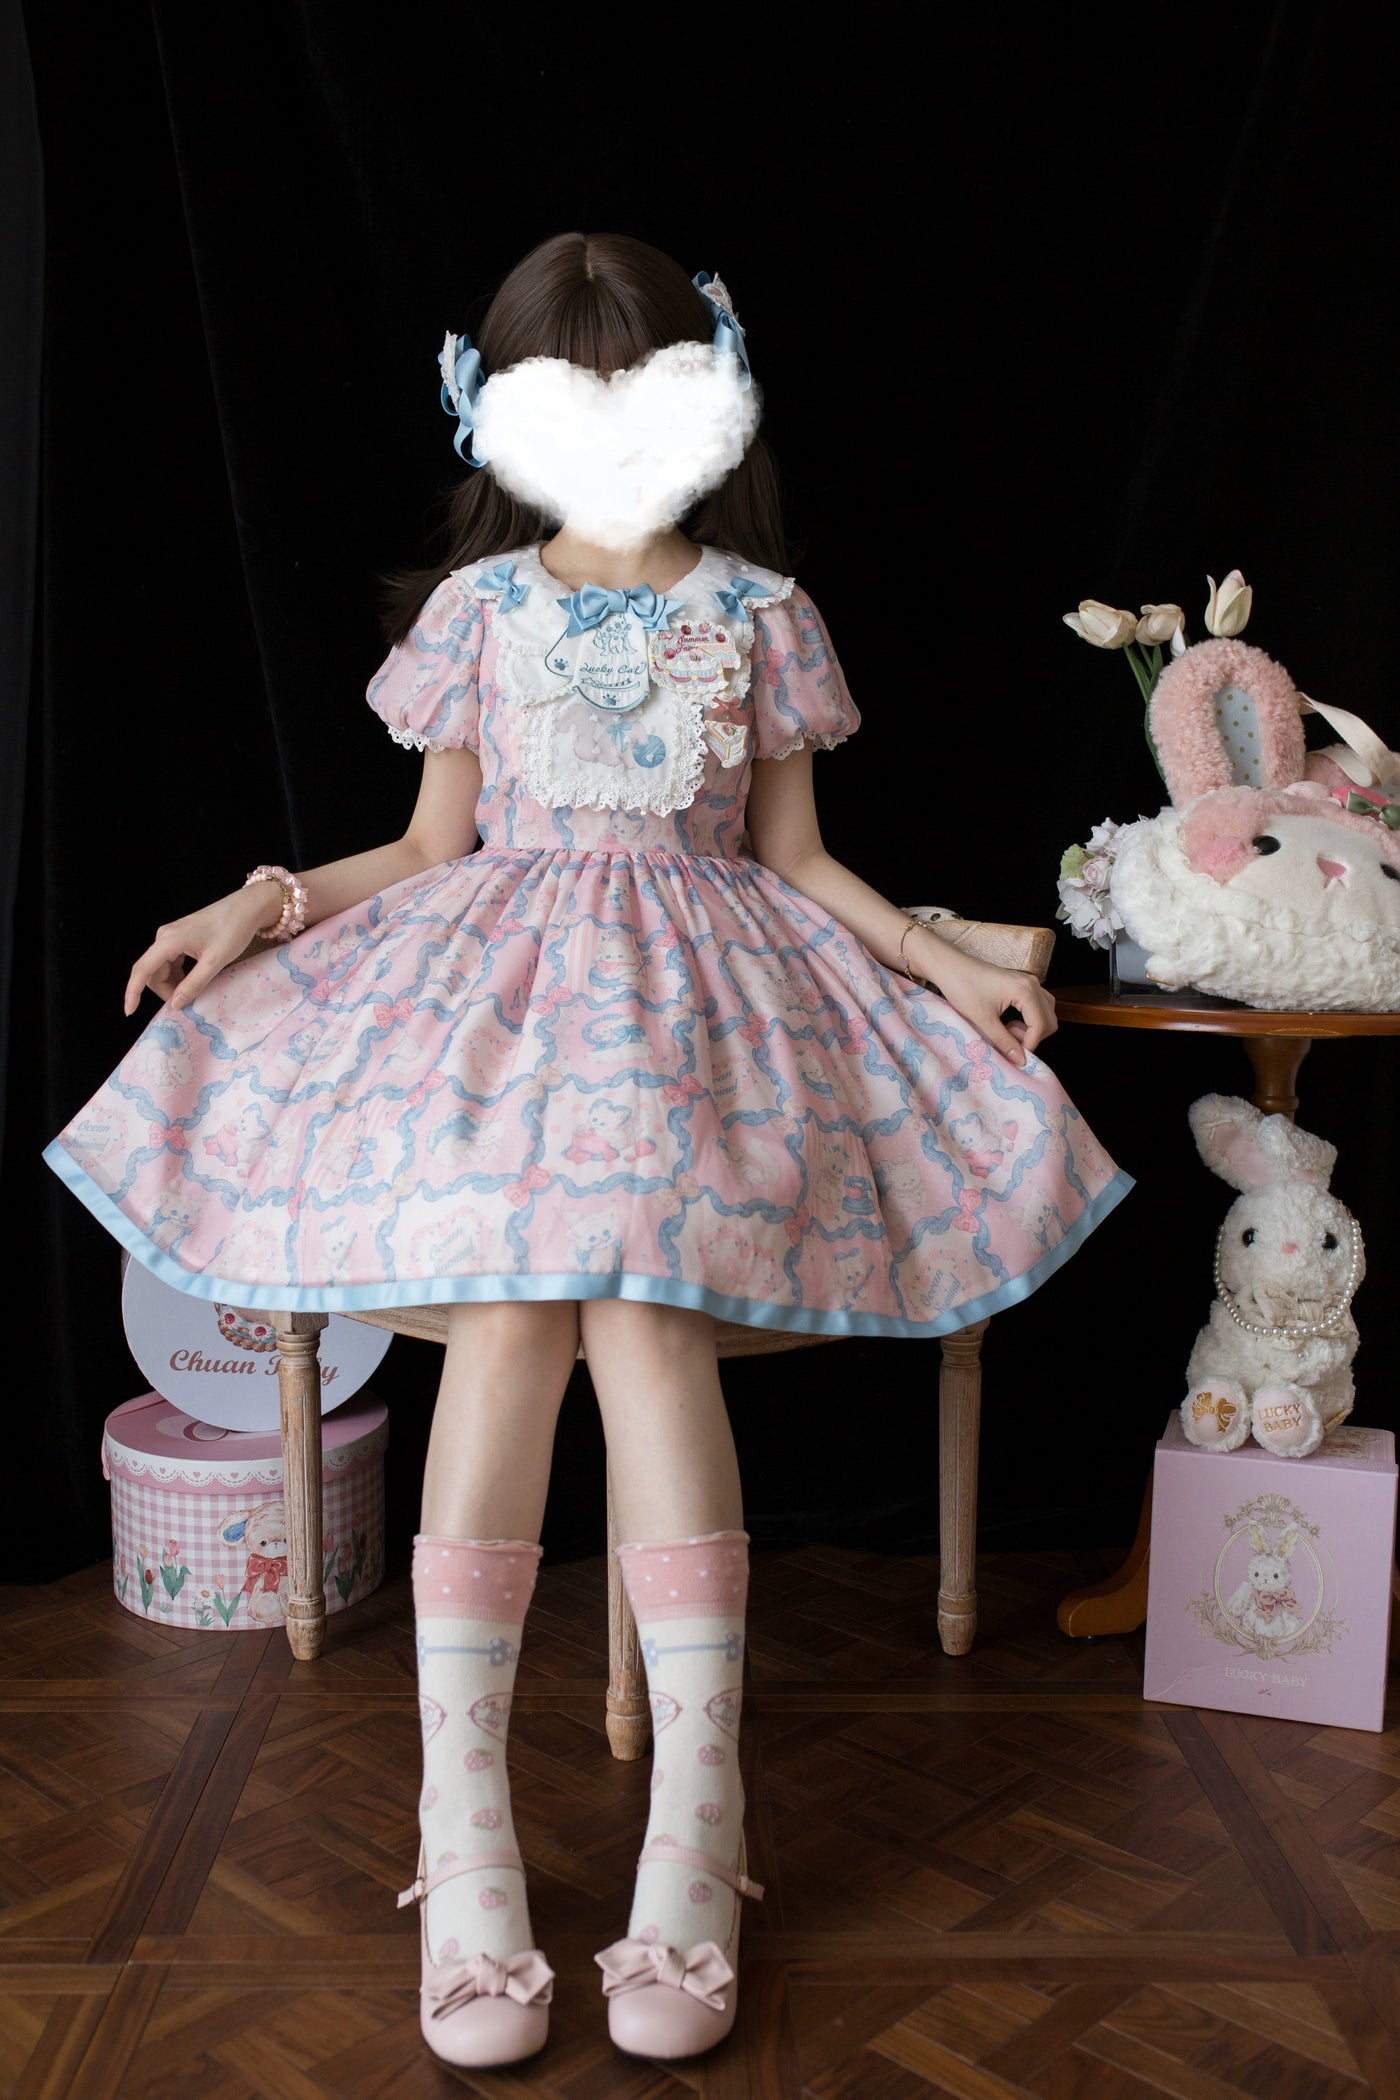 Ocean Nominal~Luck Cat~Lovely Lolita OP Dress Short Sleeve Cat Print Dress   